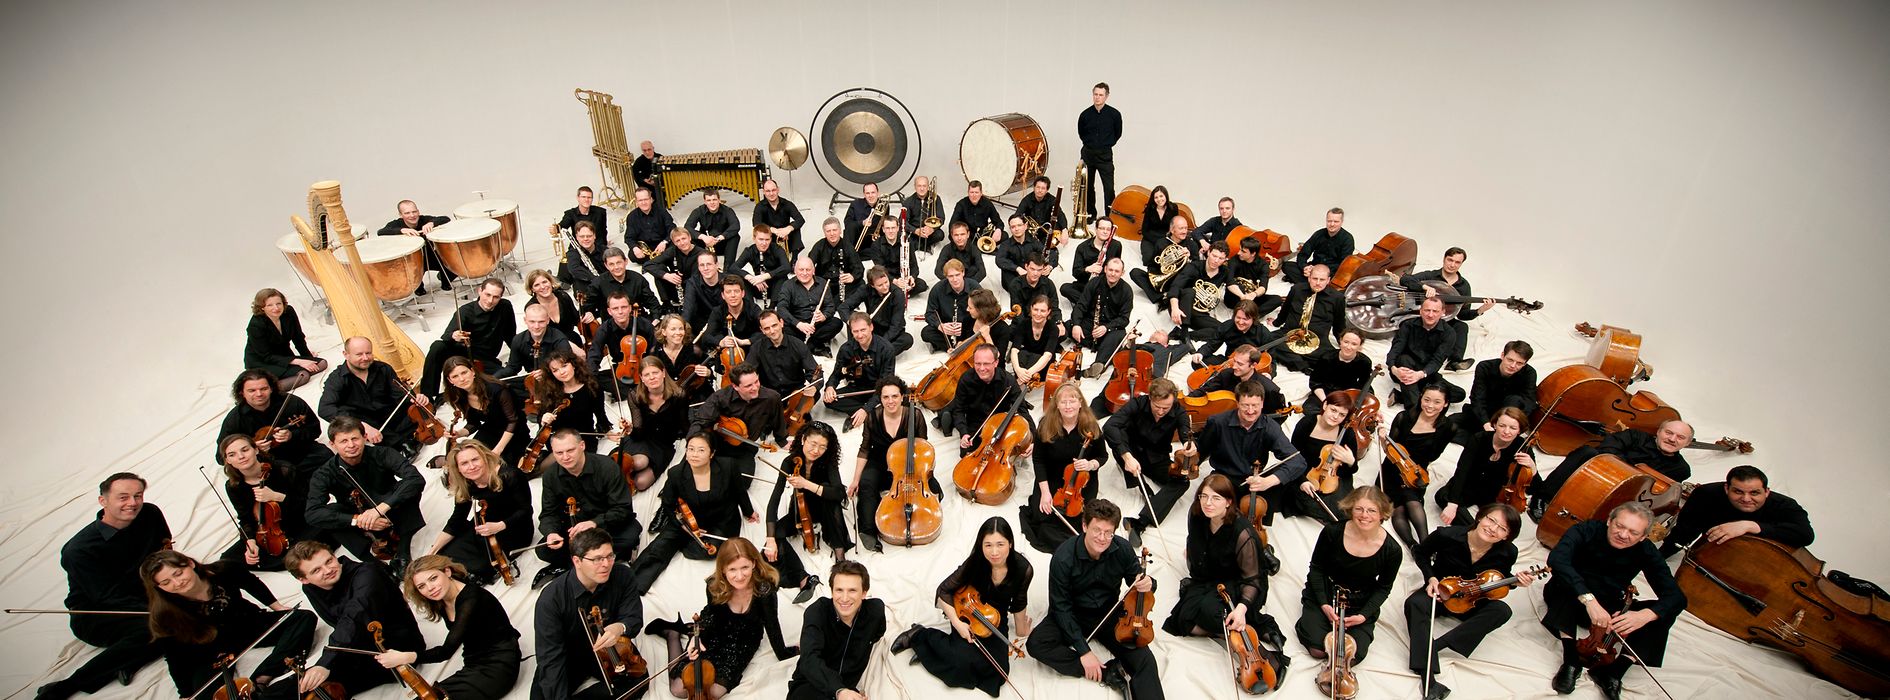 Orchestra Sinfonica della radio di Vienna - ORF 